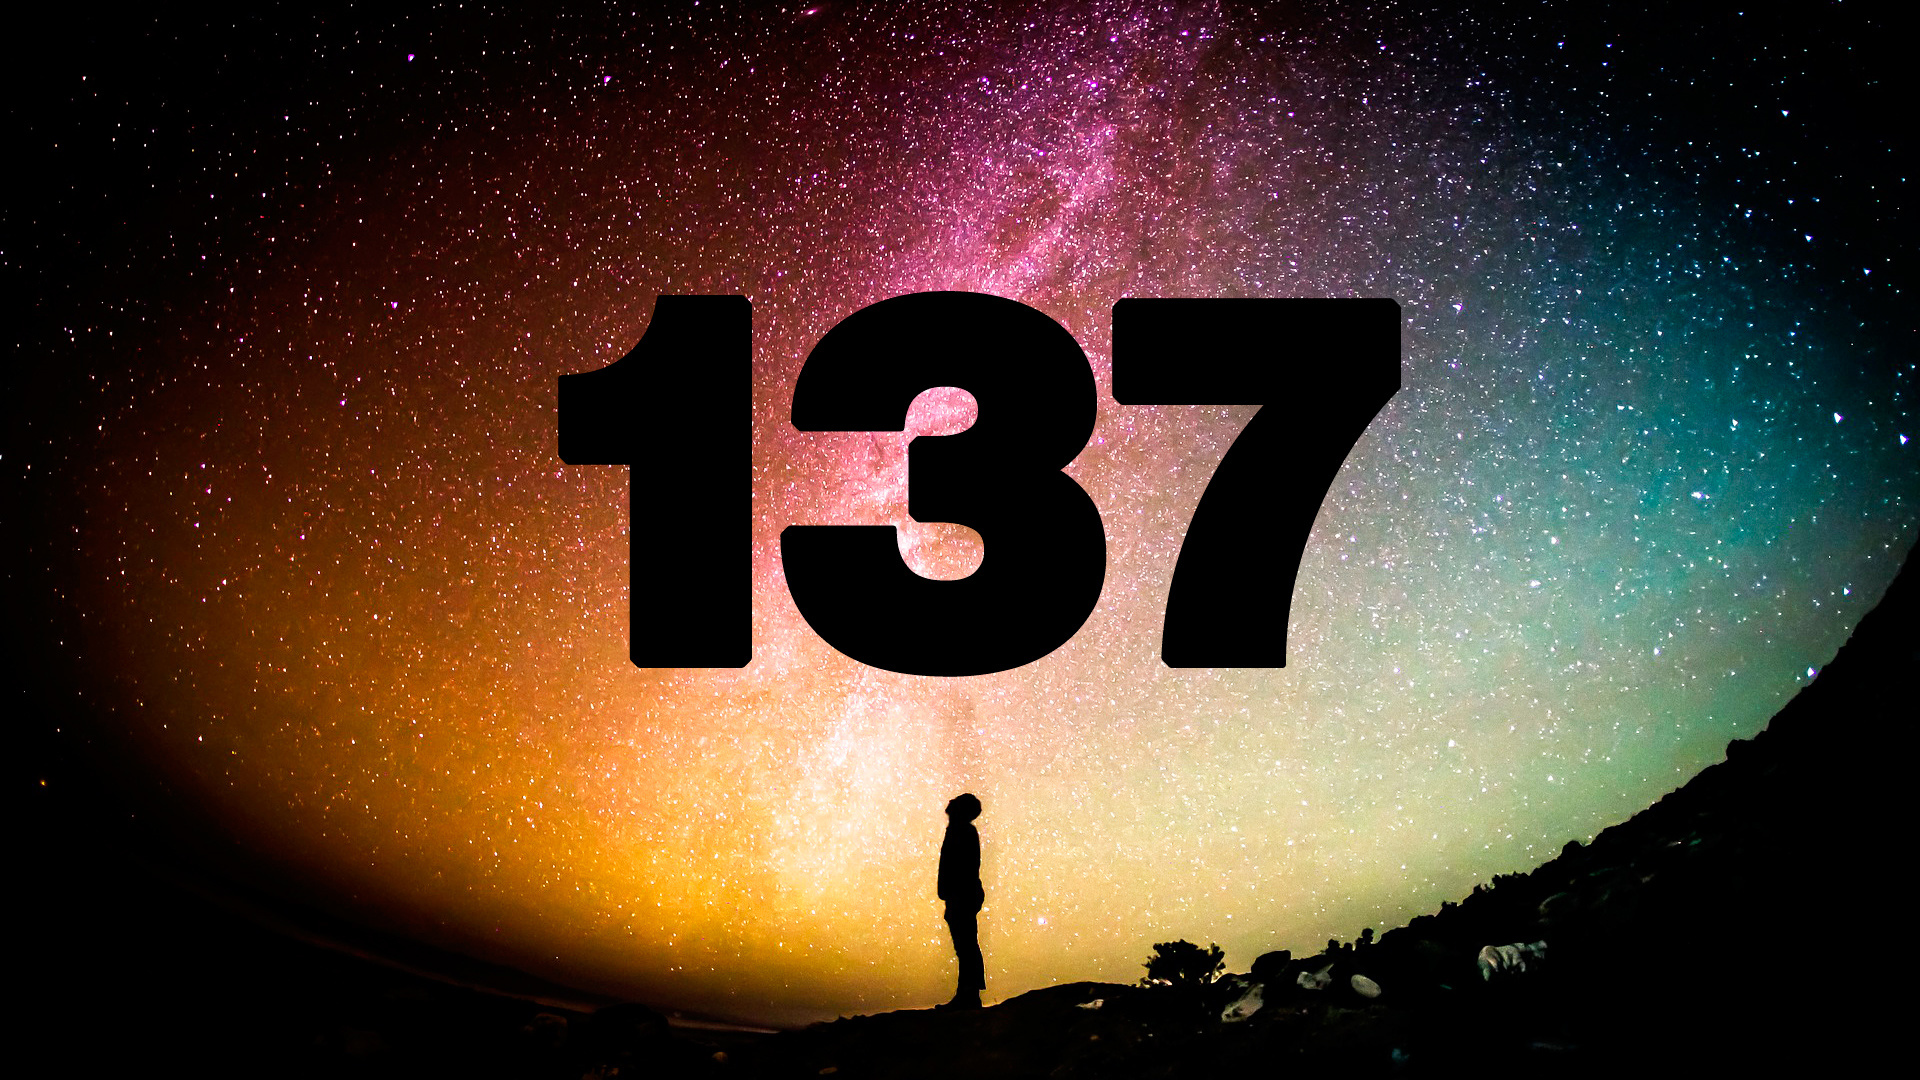 Por qué el número 137 es uno de los grandes misterios de la física | Computer Hoy